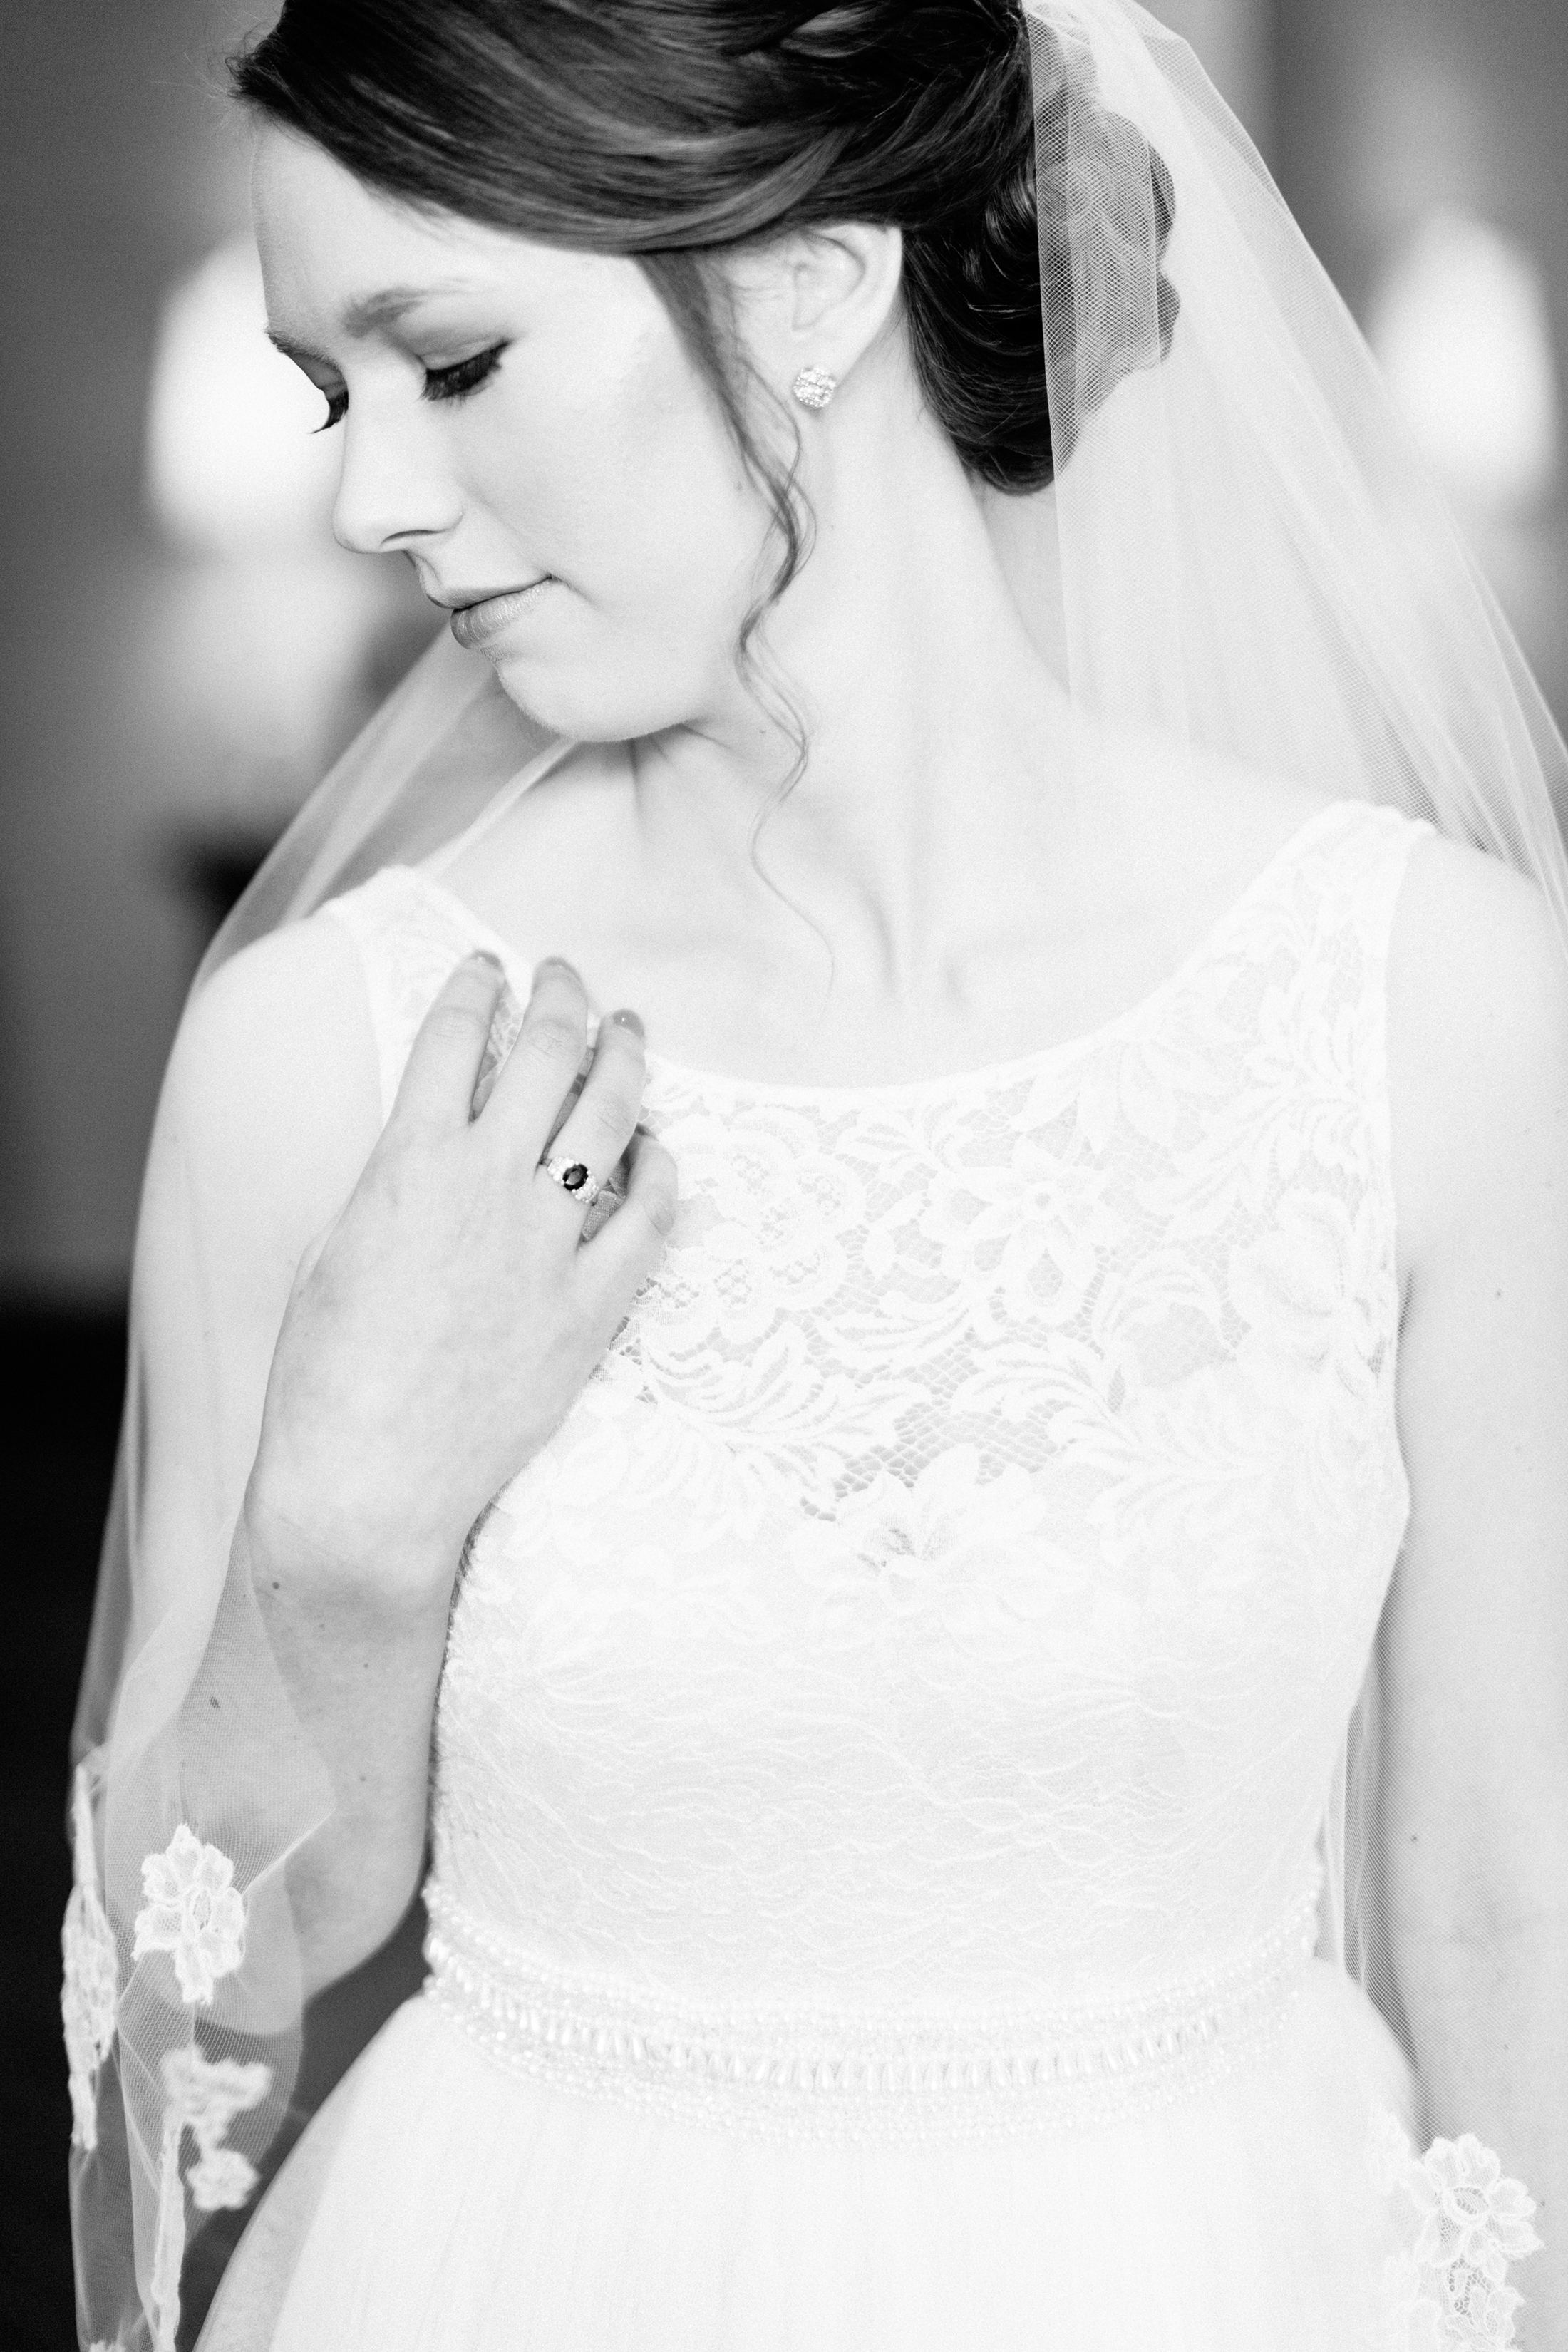 Wedding Planner Dallas TX | Ally + Austin: The Laurel